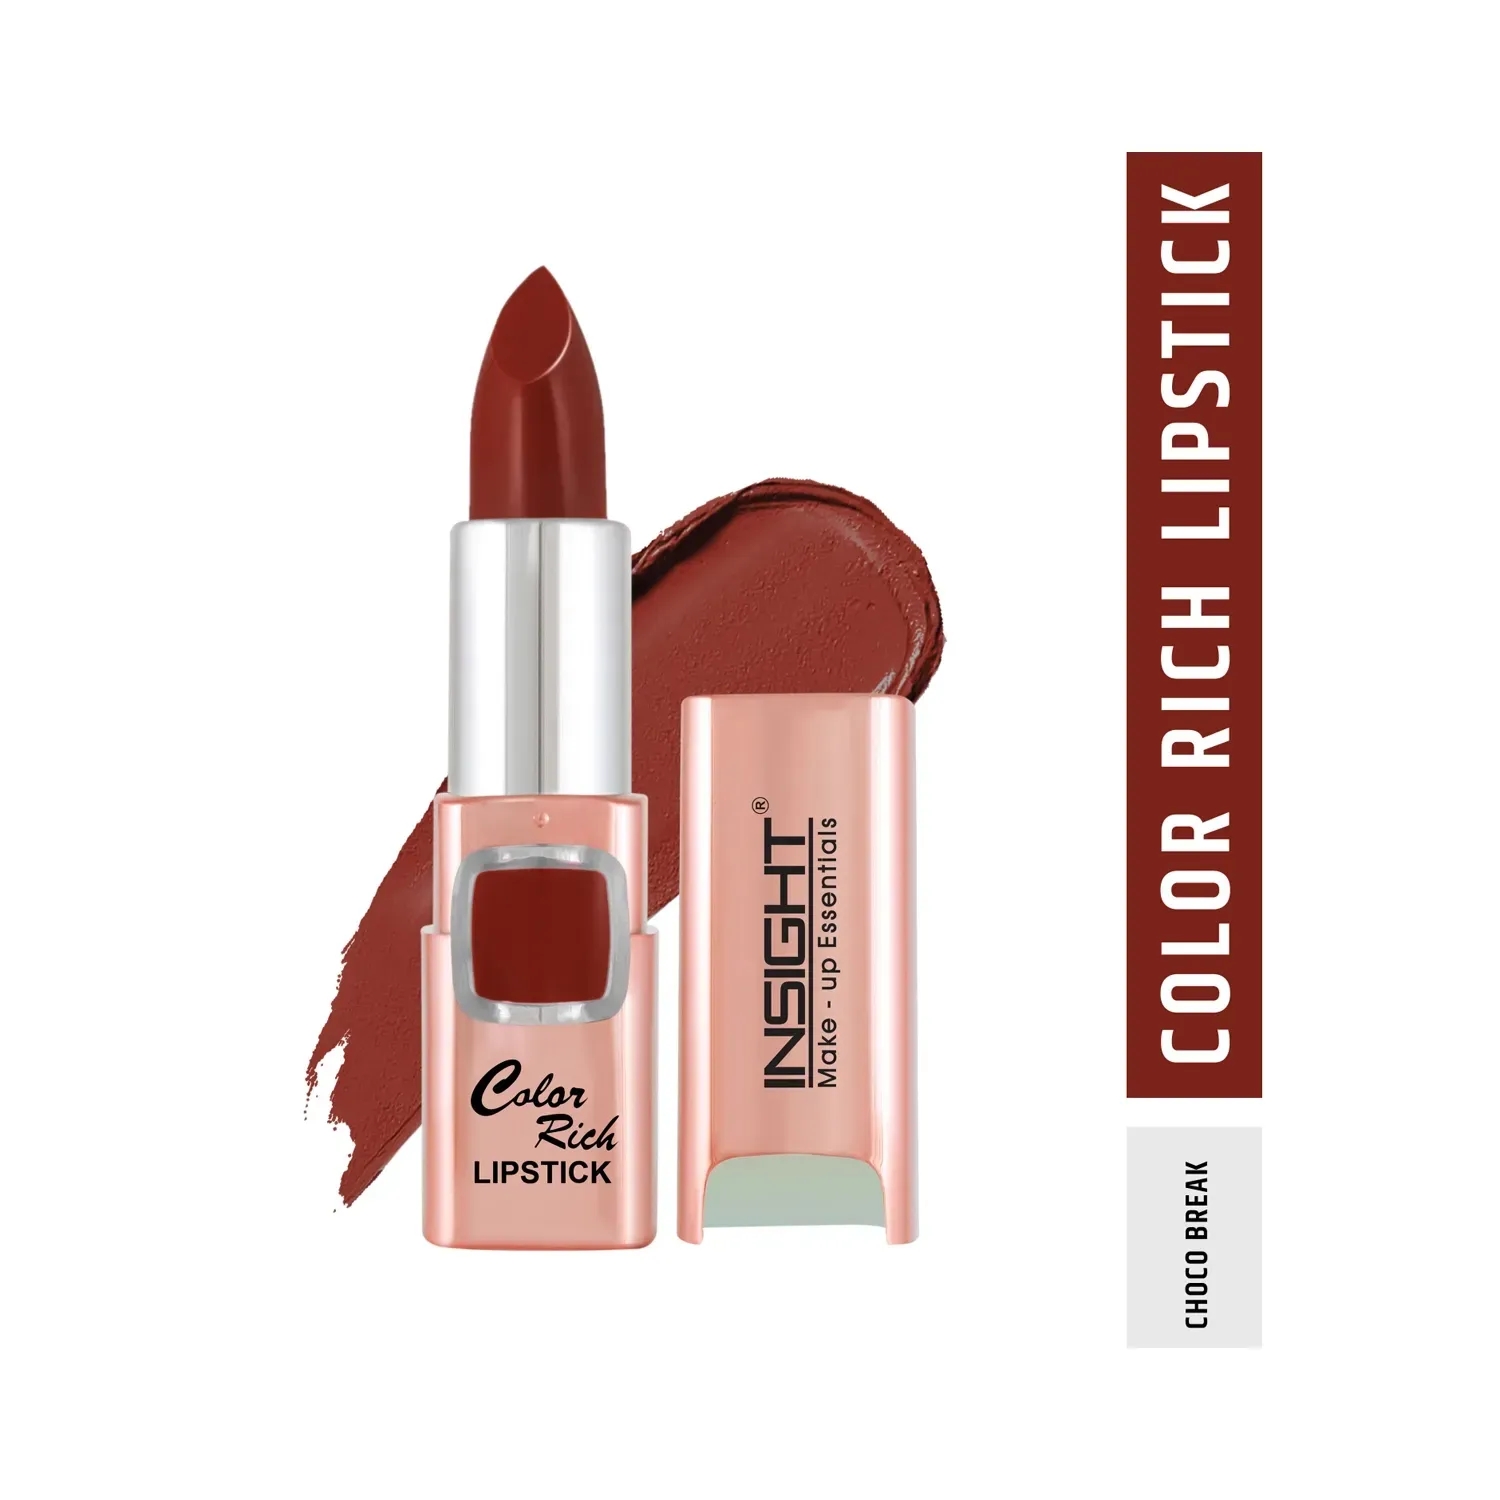 Insight Cosmetics | Insight Cosmetics Color Rich Lipstick - Choco Break (4.2g)